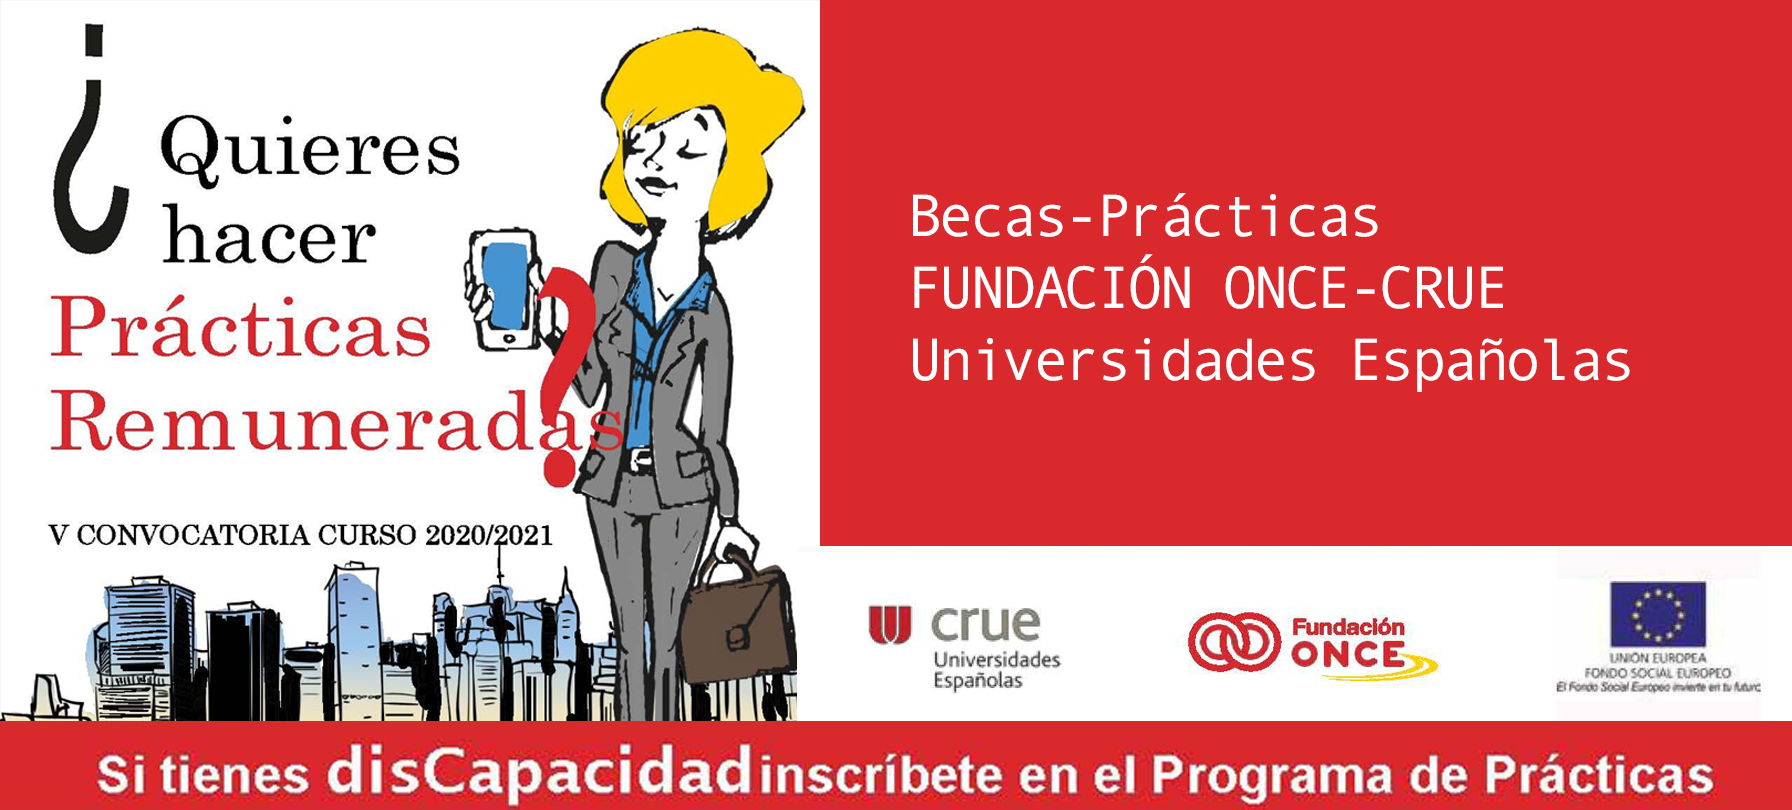 Nueva convocatoria Becas-Prácticas FUNDACIÓN ONCE-CRUE Universidades Españolas